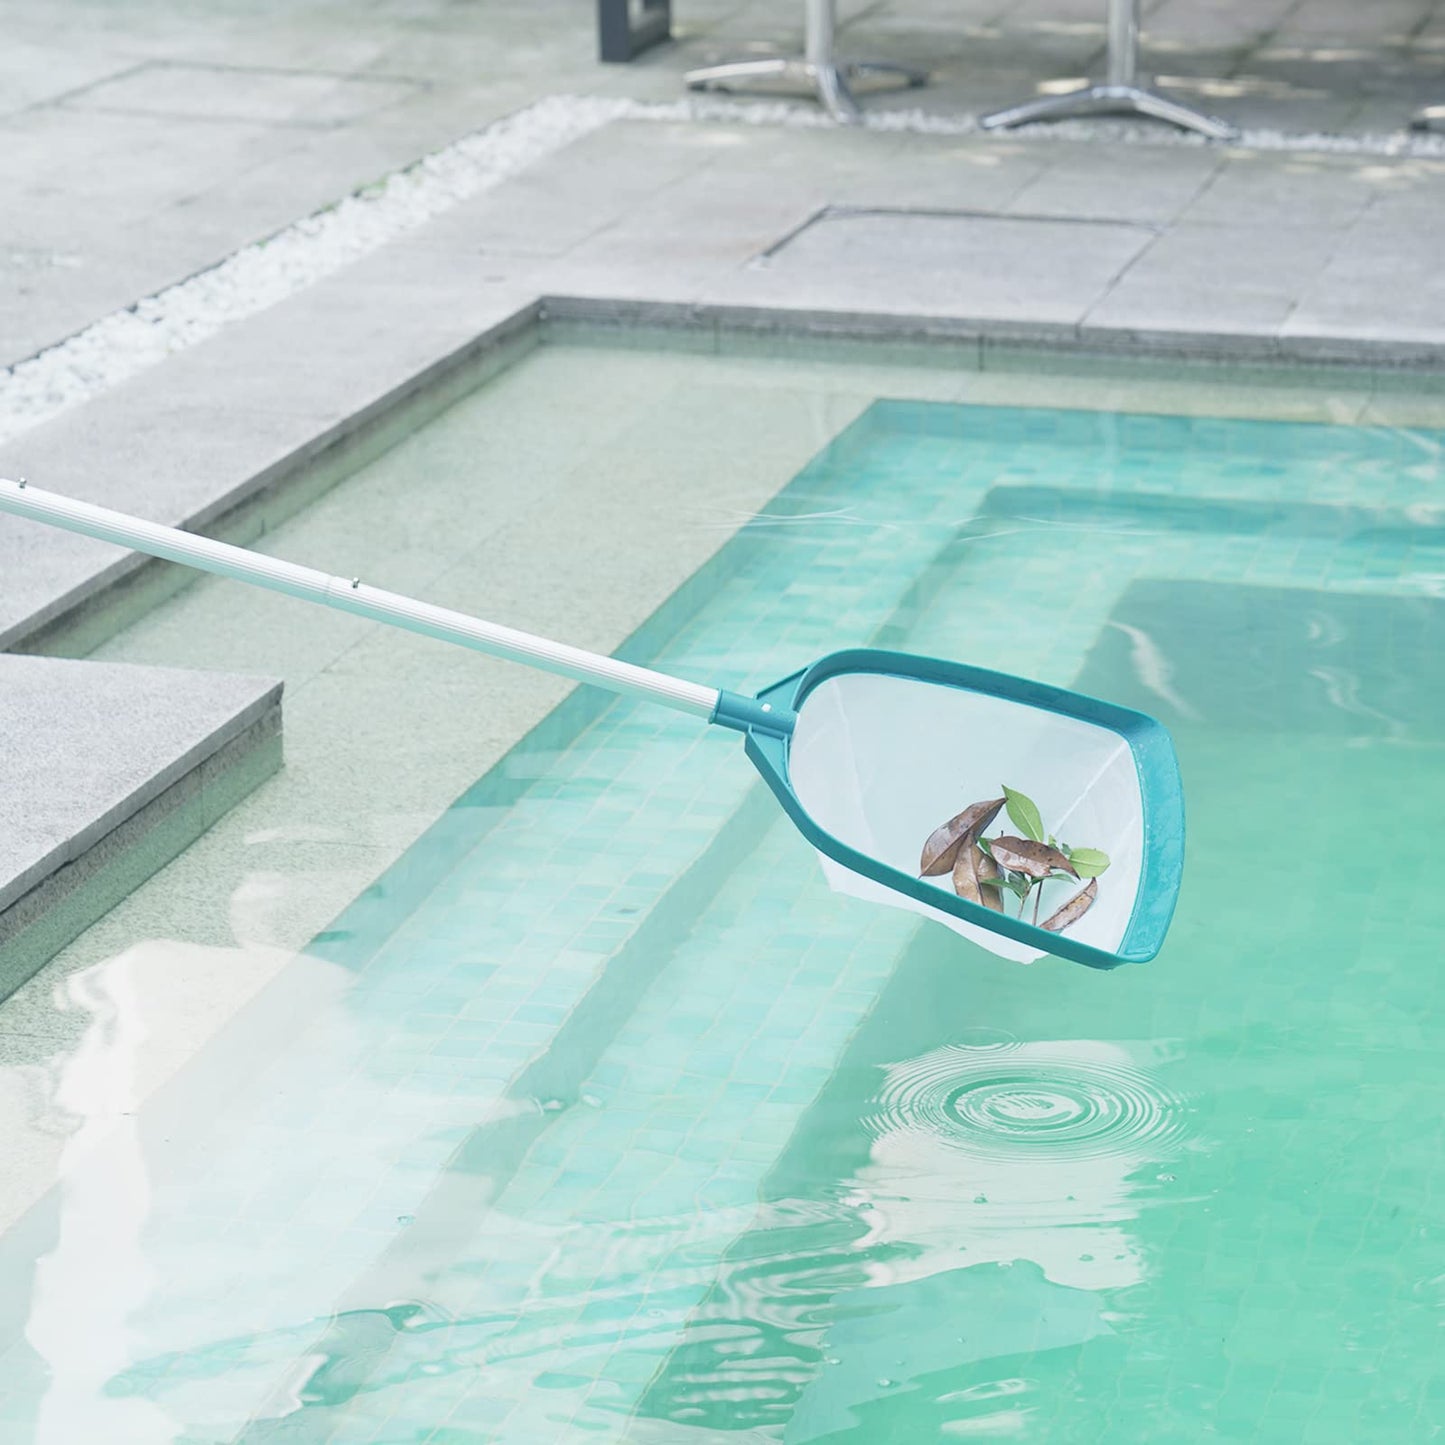 POOLWHALE Améliore le râteau télescopique pour écumoire de piscine avec poteau en aluminium réglable et maille moyenne fine en nylon pour nettoyer les piscines, les bains à remous, les spas et les fontaines Skimmer de piscine avec poteau